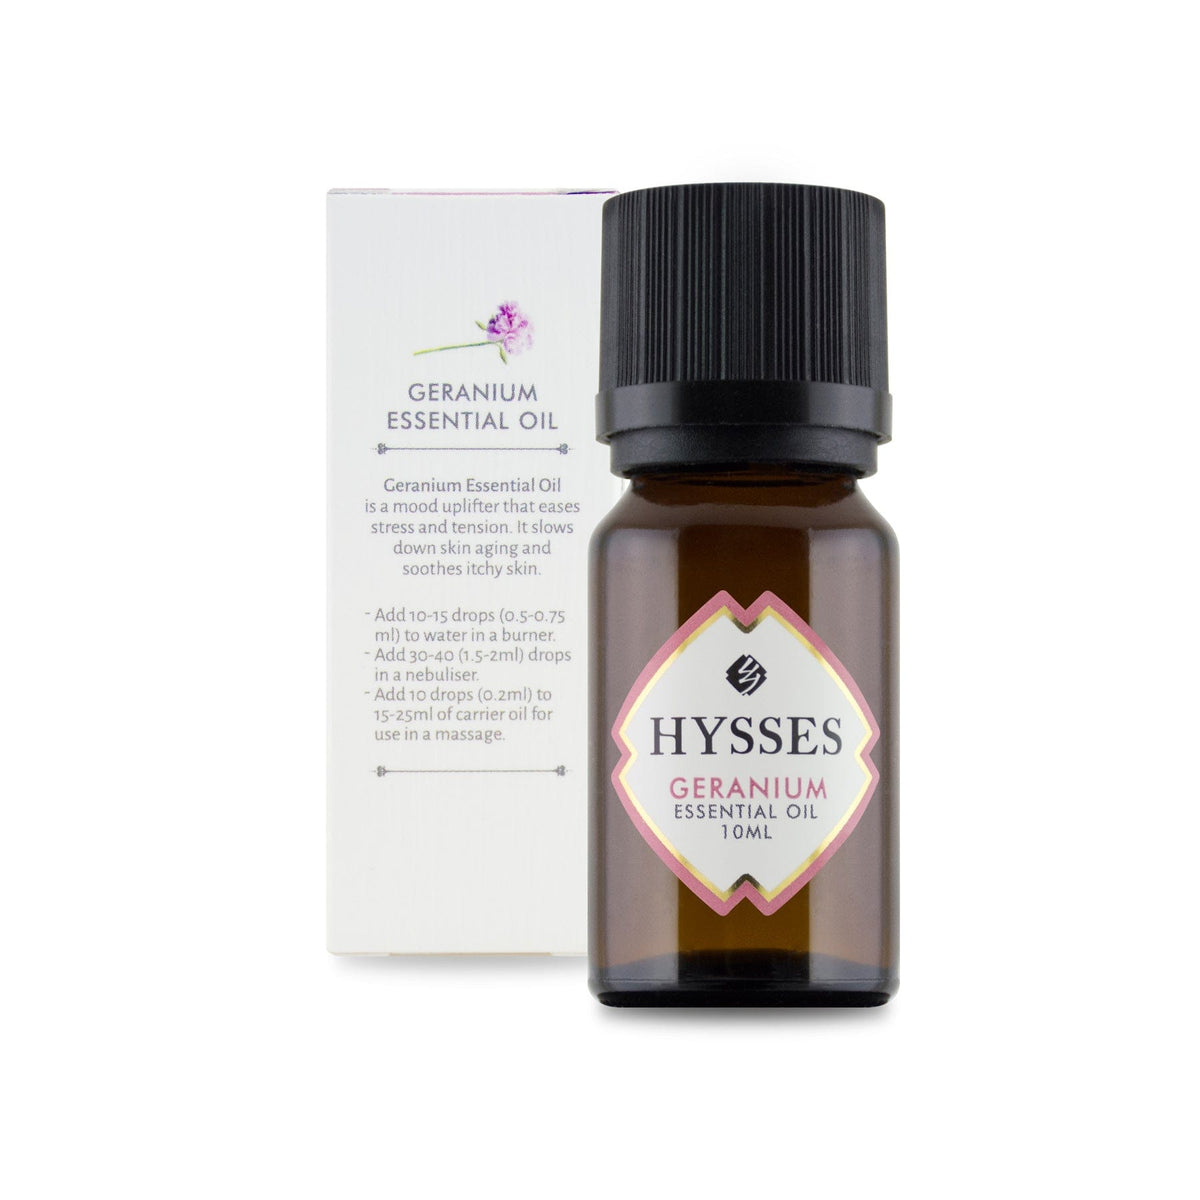 Hysses Essential Oil Essential Oil Geranium